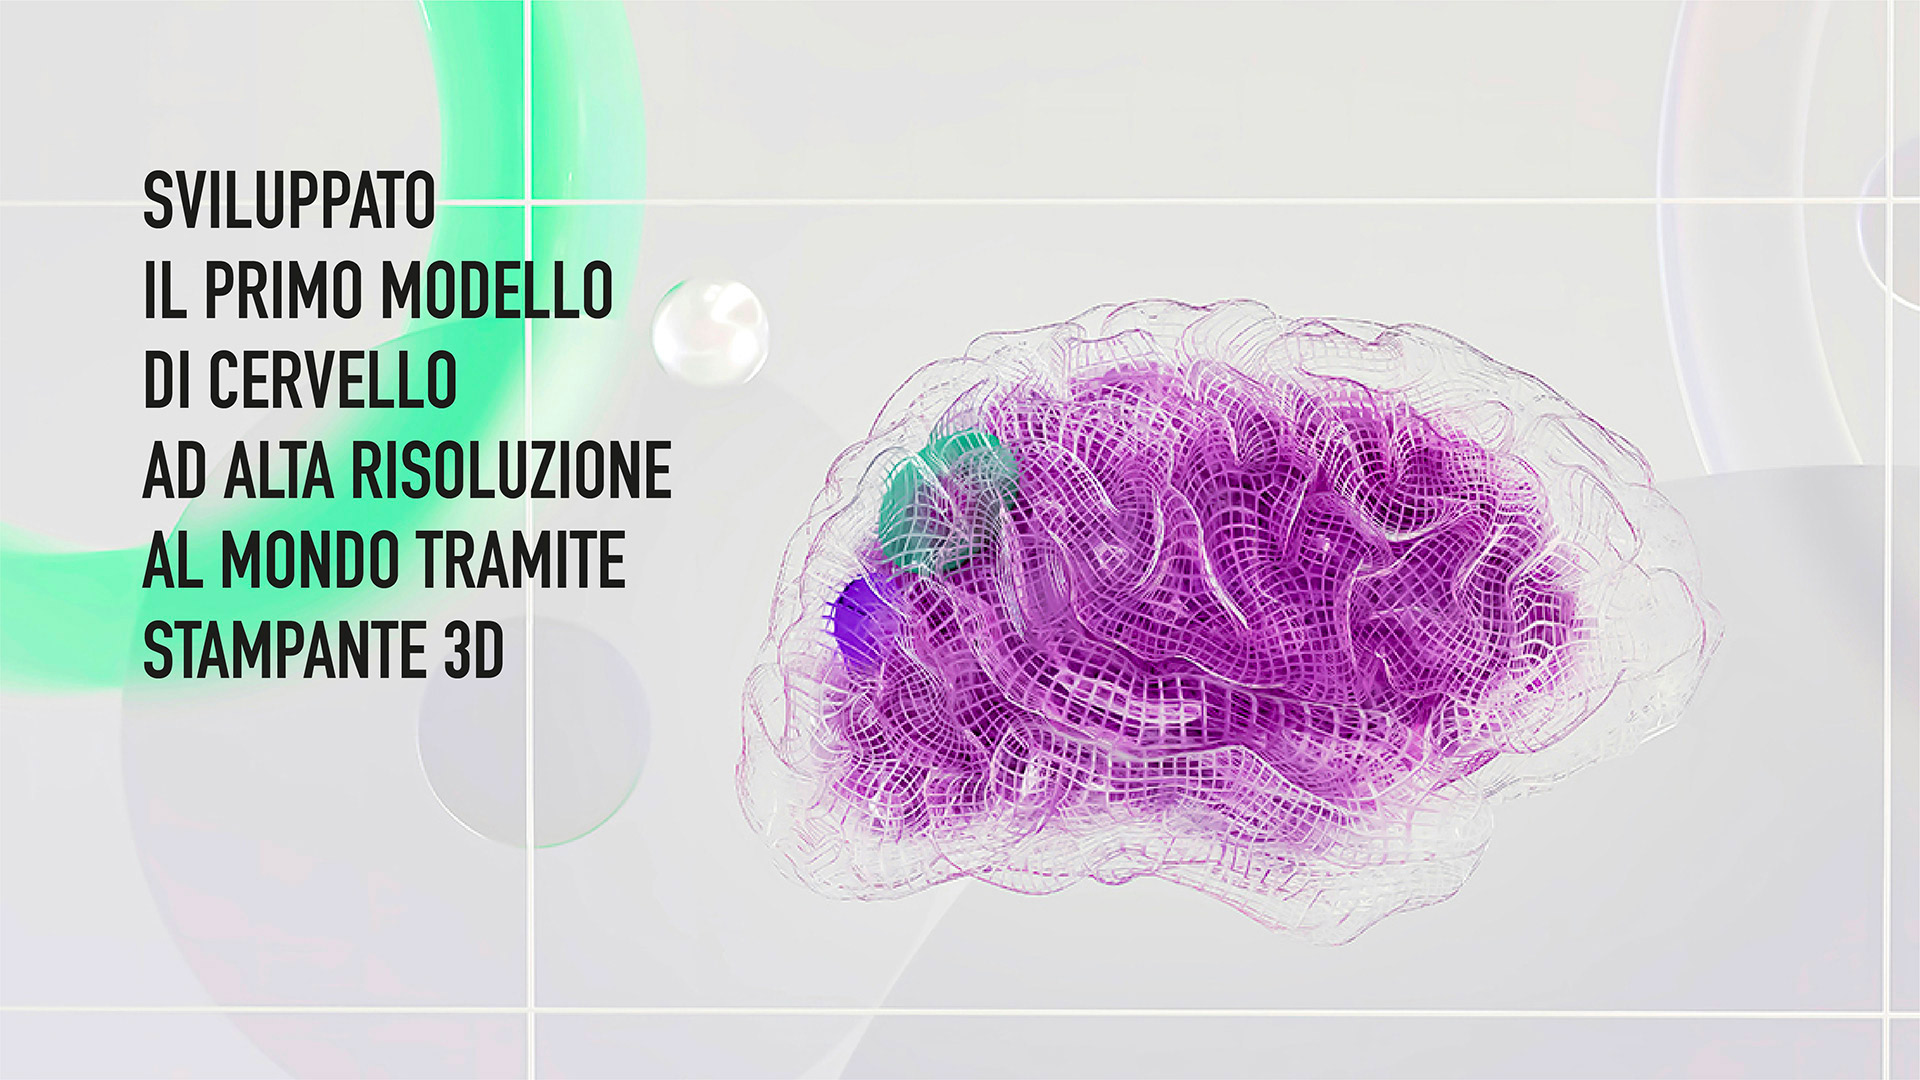 Sviluppato il primo modello di cervello ad alta risoluzione al mondo tramite stampante 3D